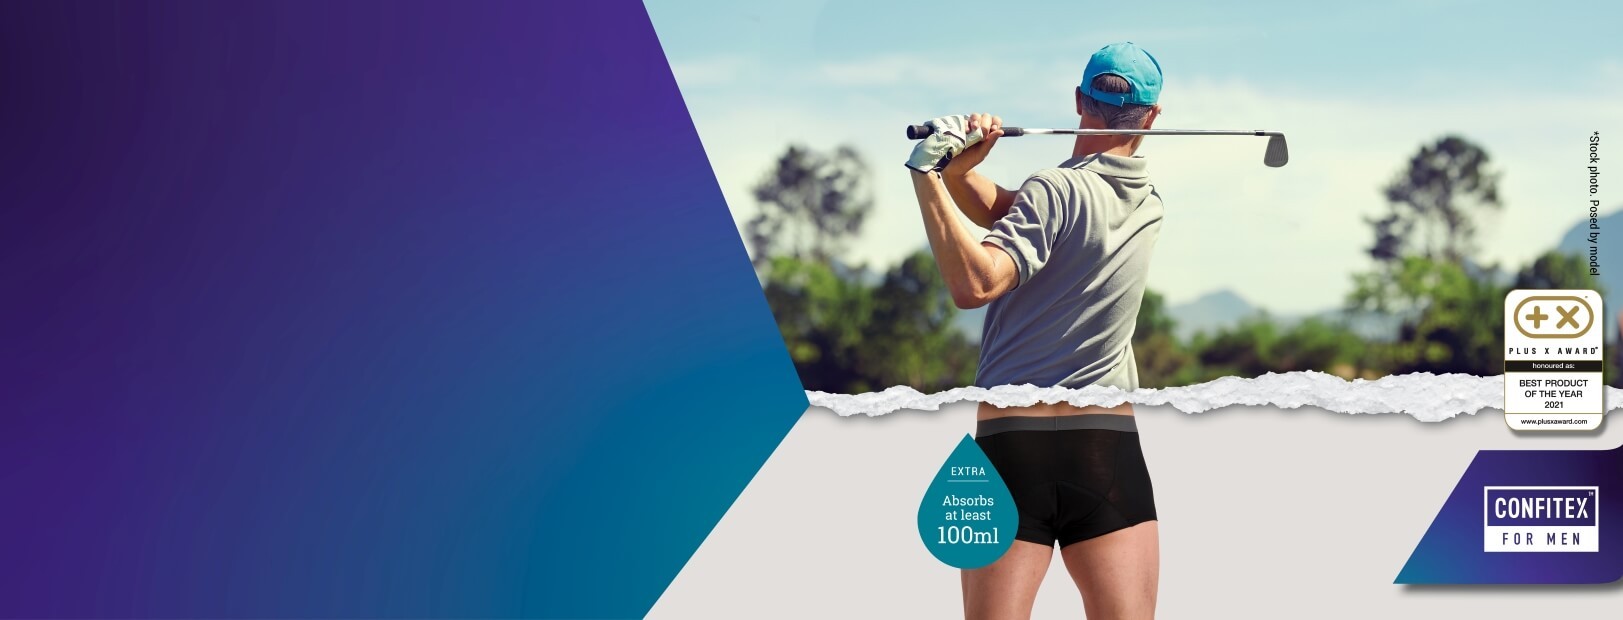 Golfer wearing Confitex for Men Extra absorbent underwear